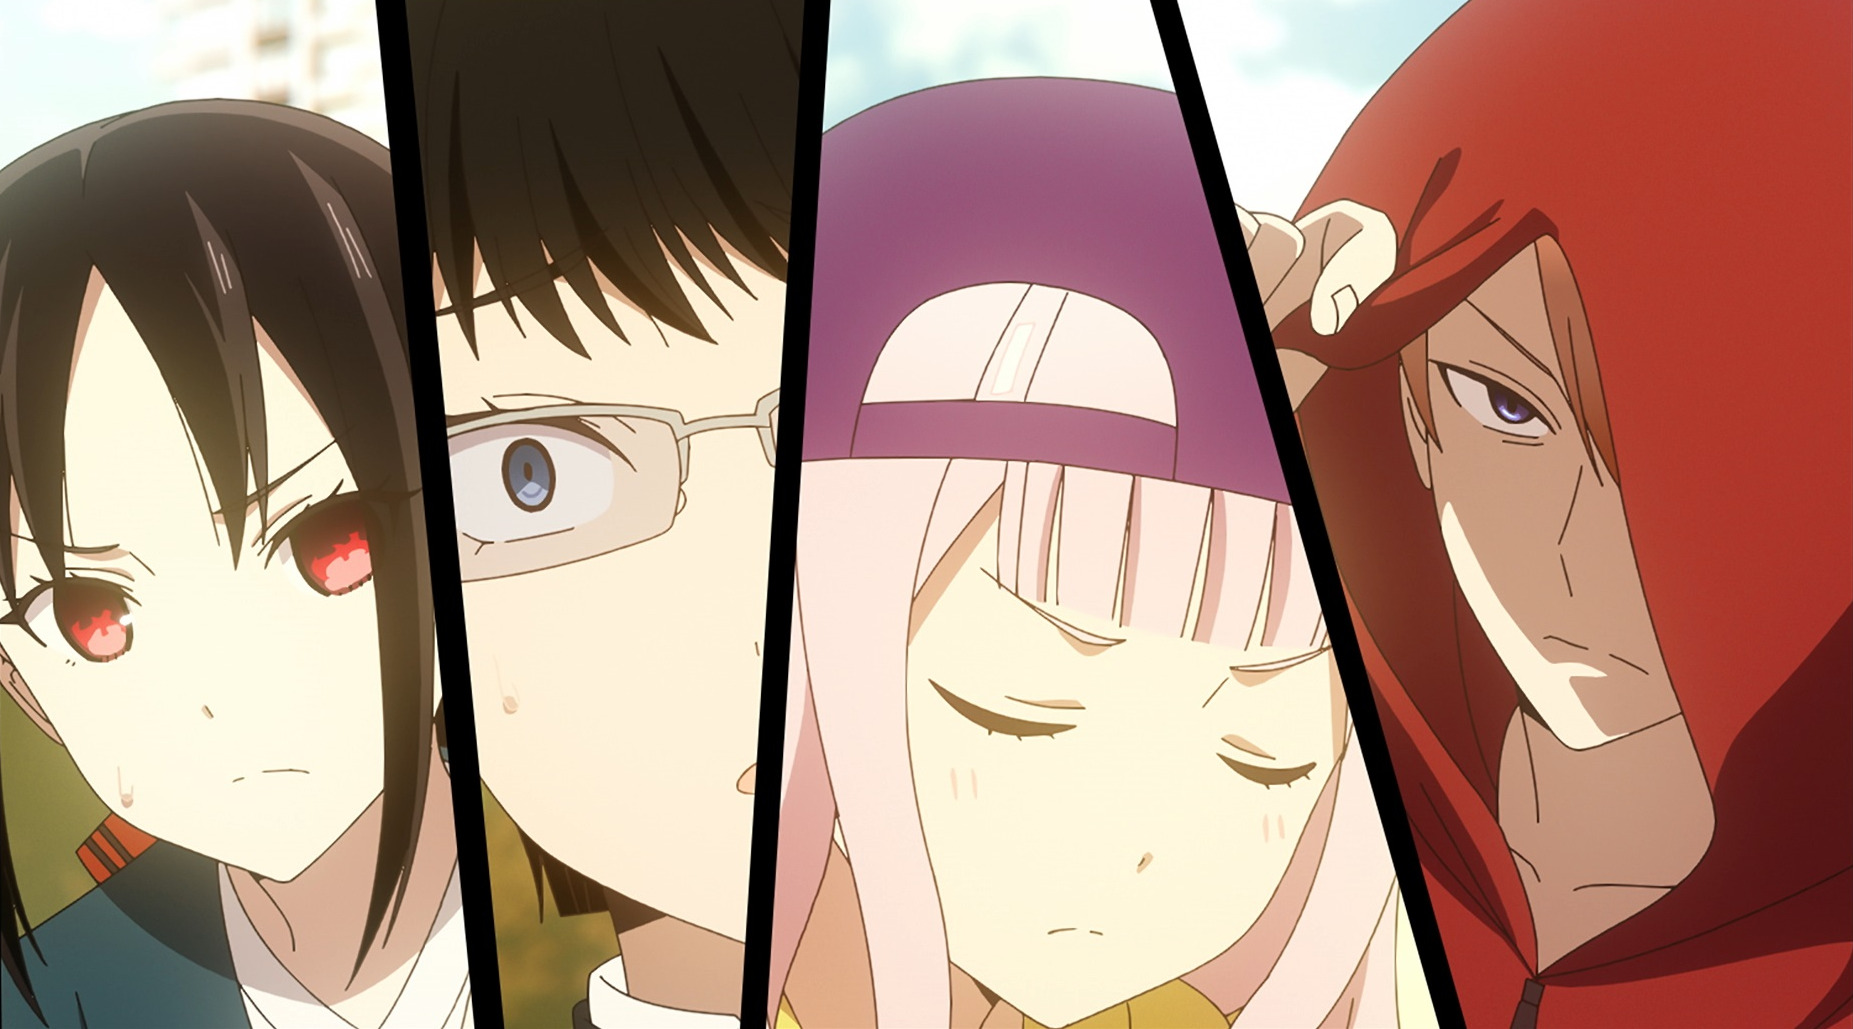 10th 'Aoashi' Anime Episode Previewed